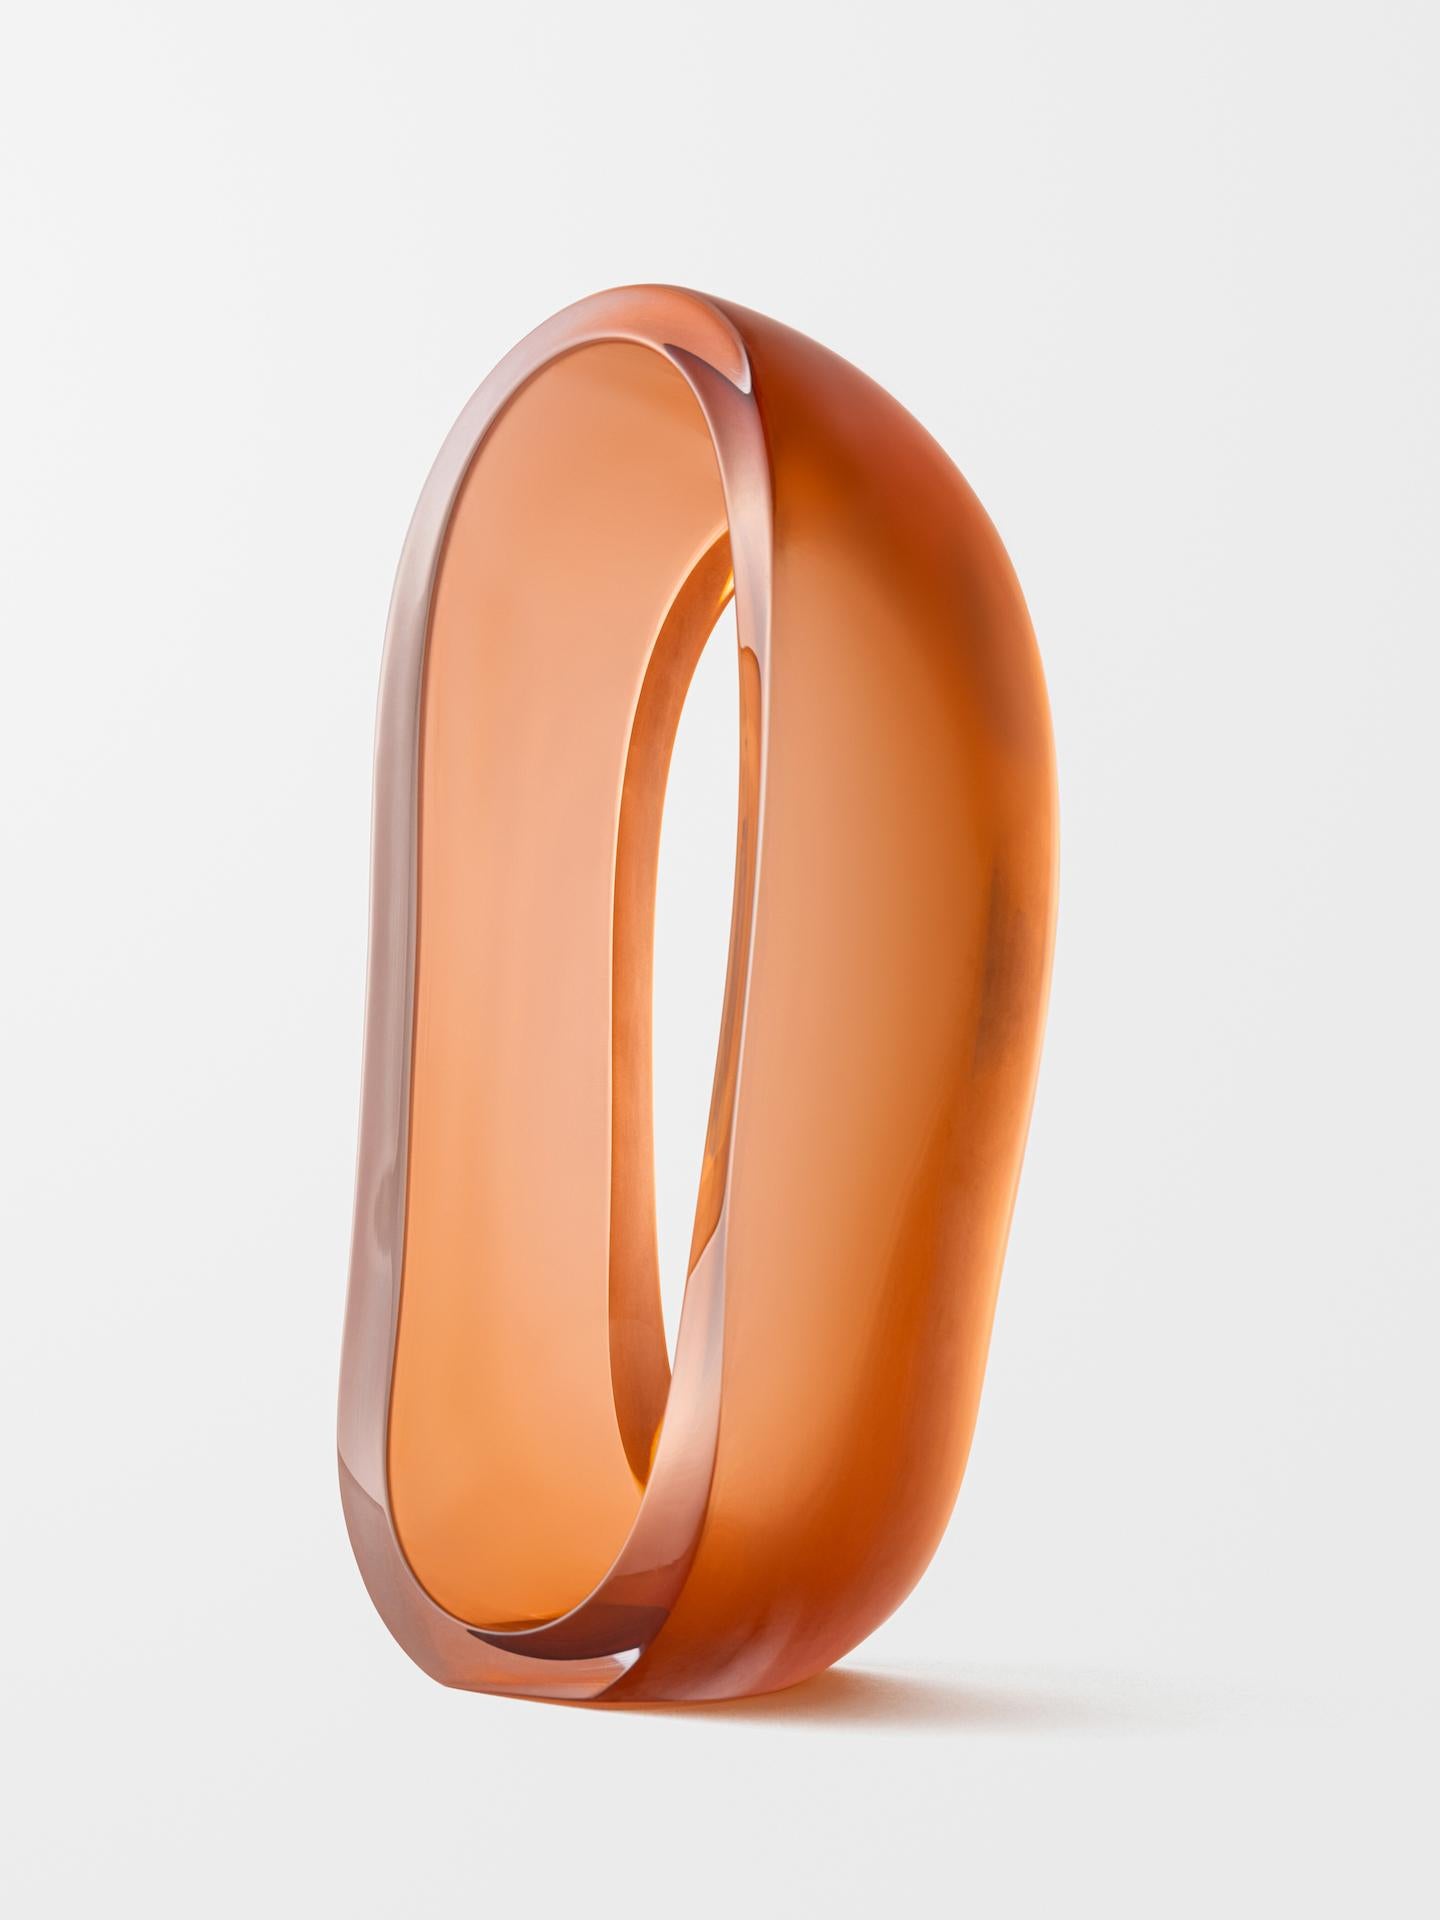 Jonas Noël Niedermann Abstract Sculpture - Loops (Orange)